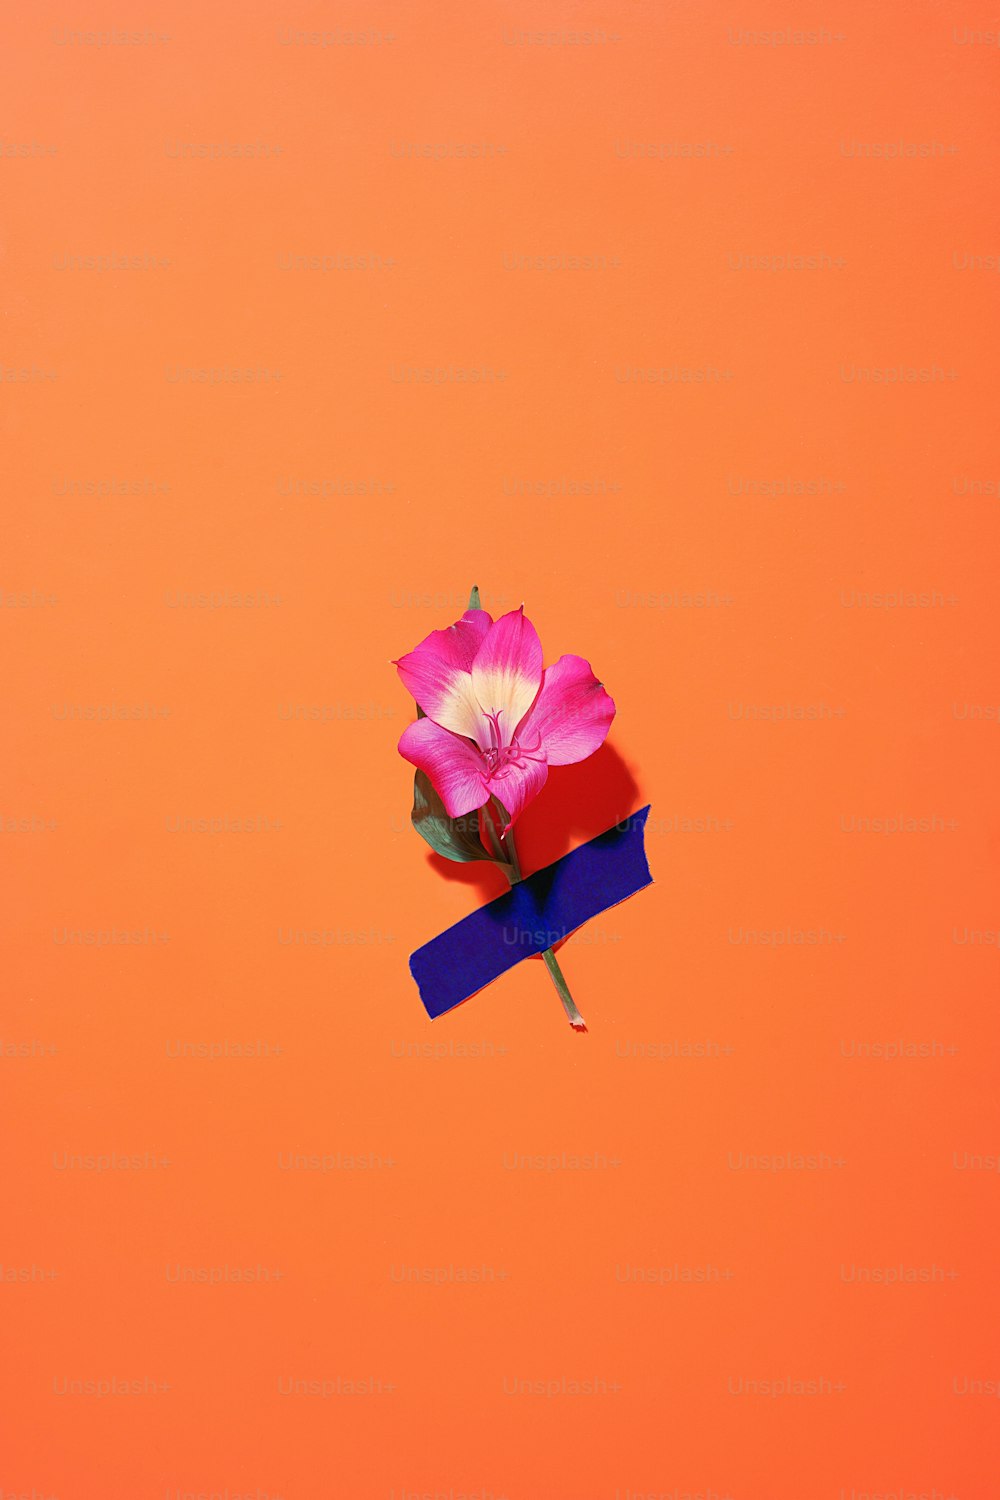 eine einzelne rosa Blume auf einem blauen Band